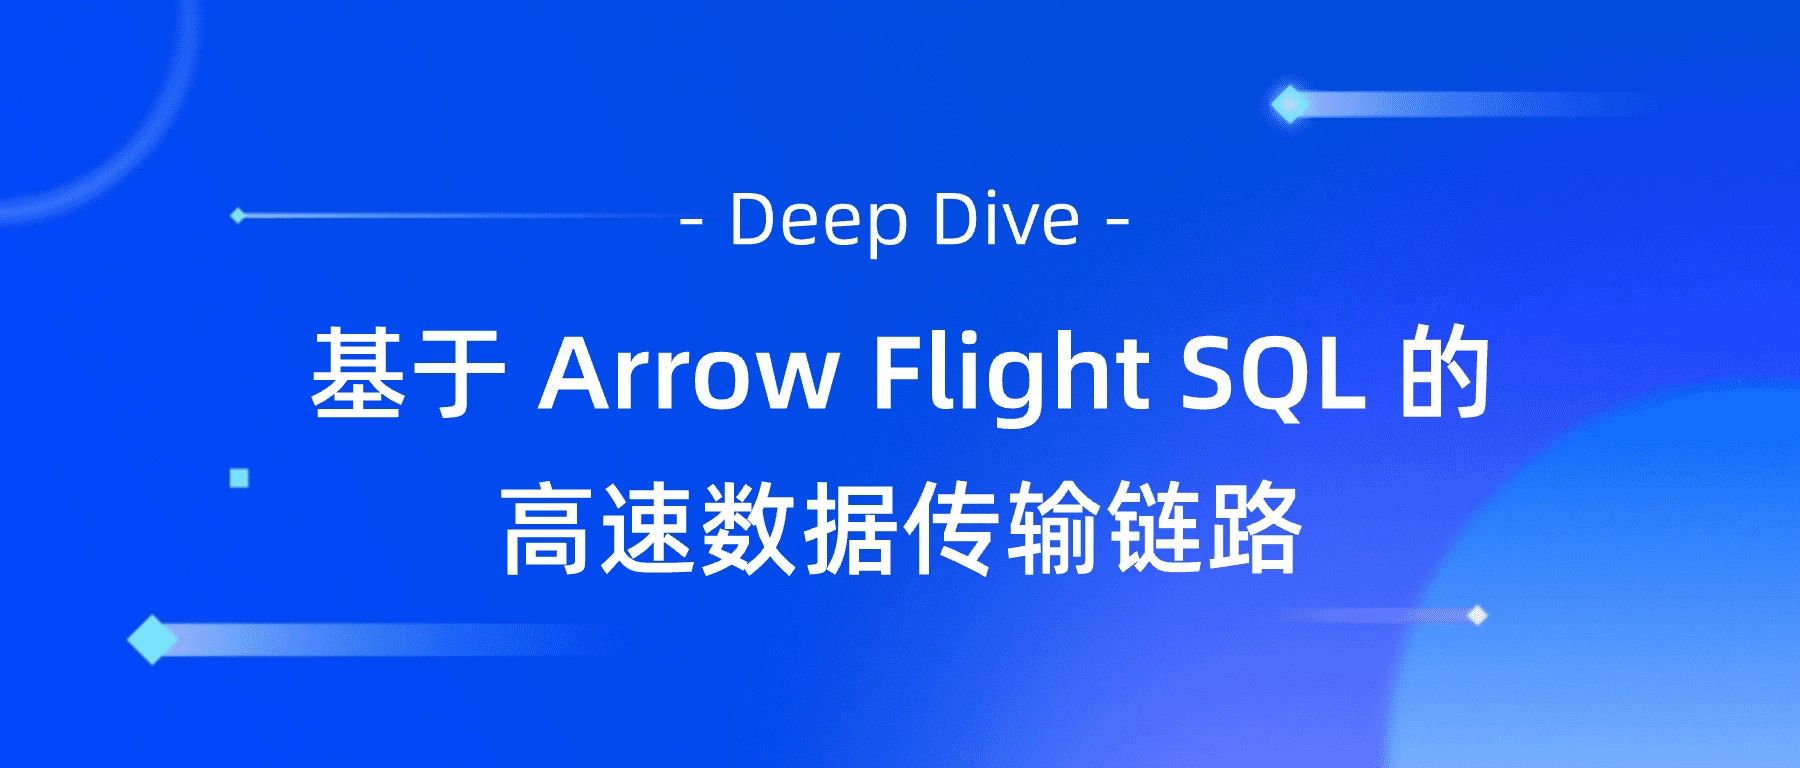 Apache Doris 支持 Arrow Flight SQL 协议，数据传输效率实现百倍飞跃